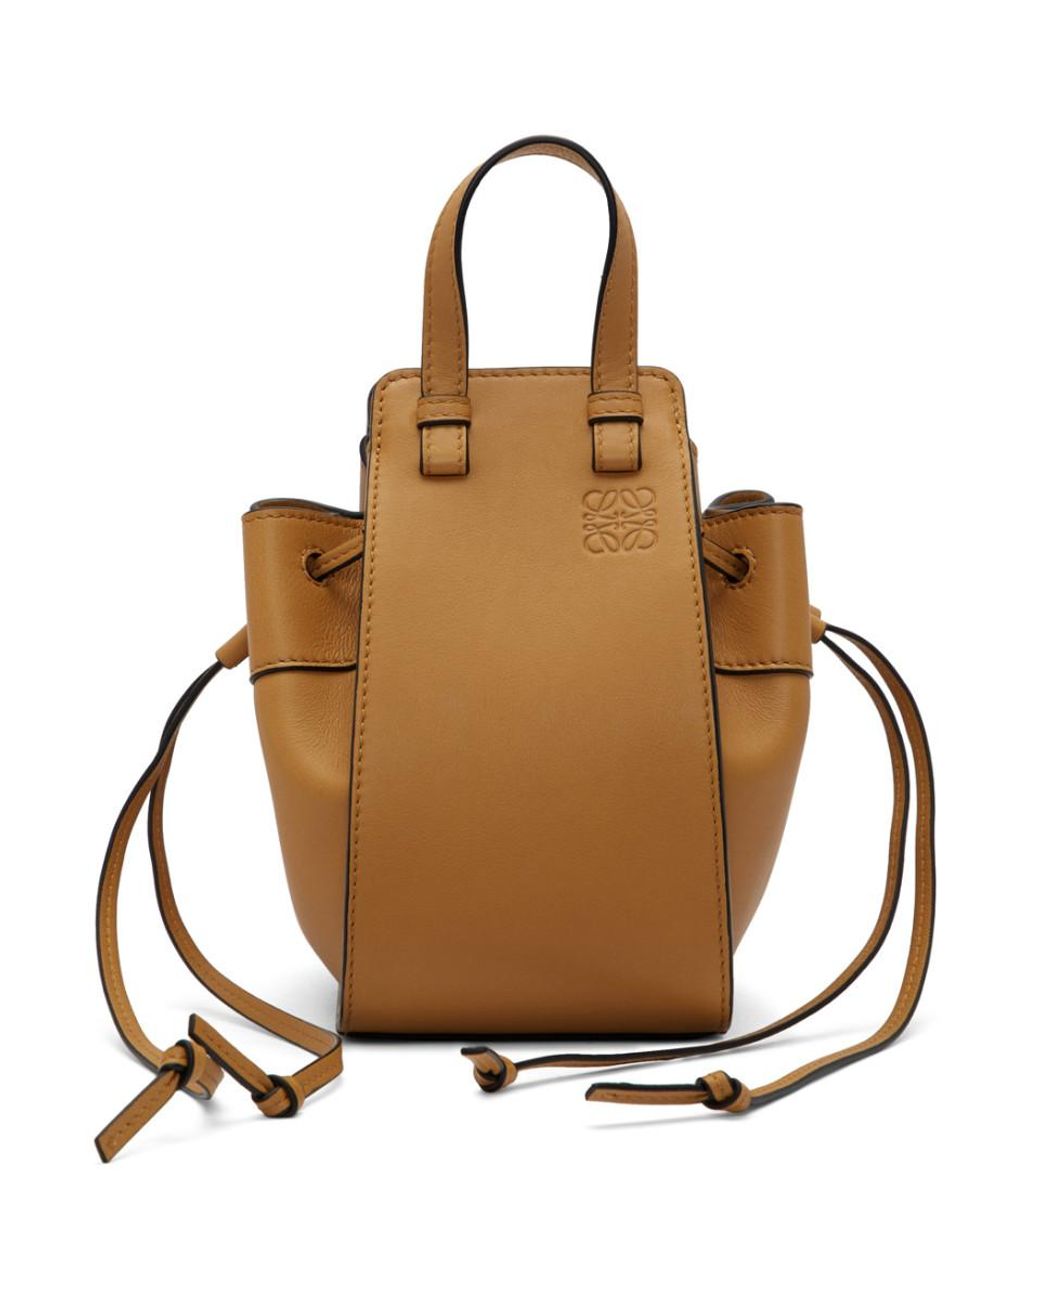 Loewe Leather Tan Mini Hammock Bag in Brown - Lyst